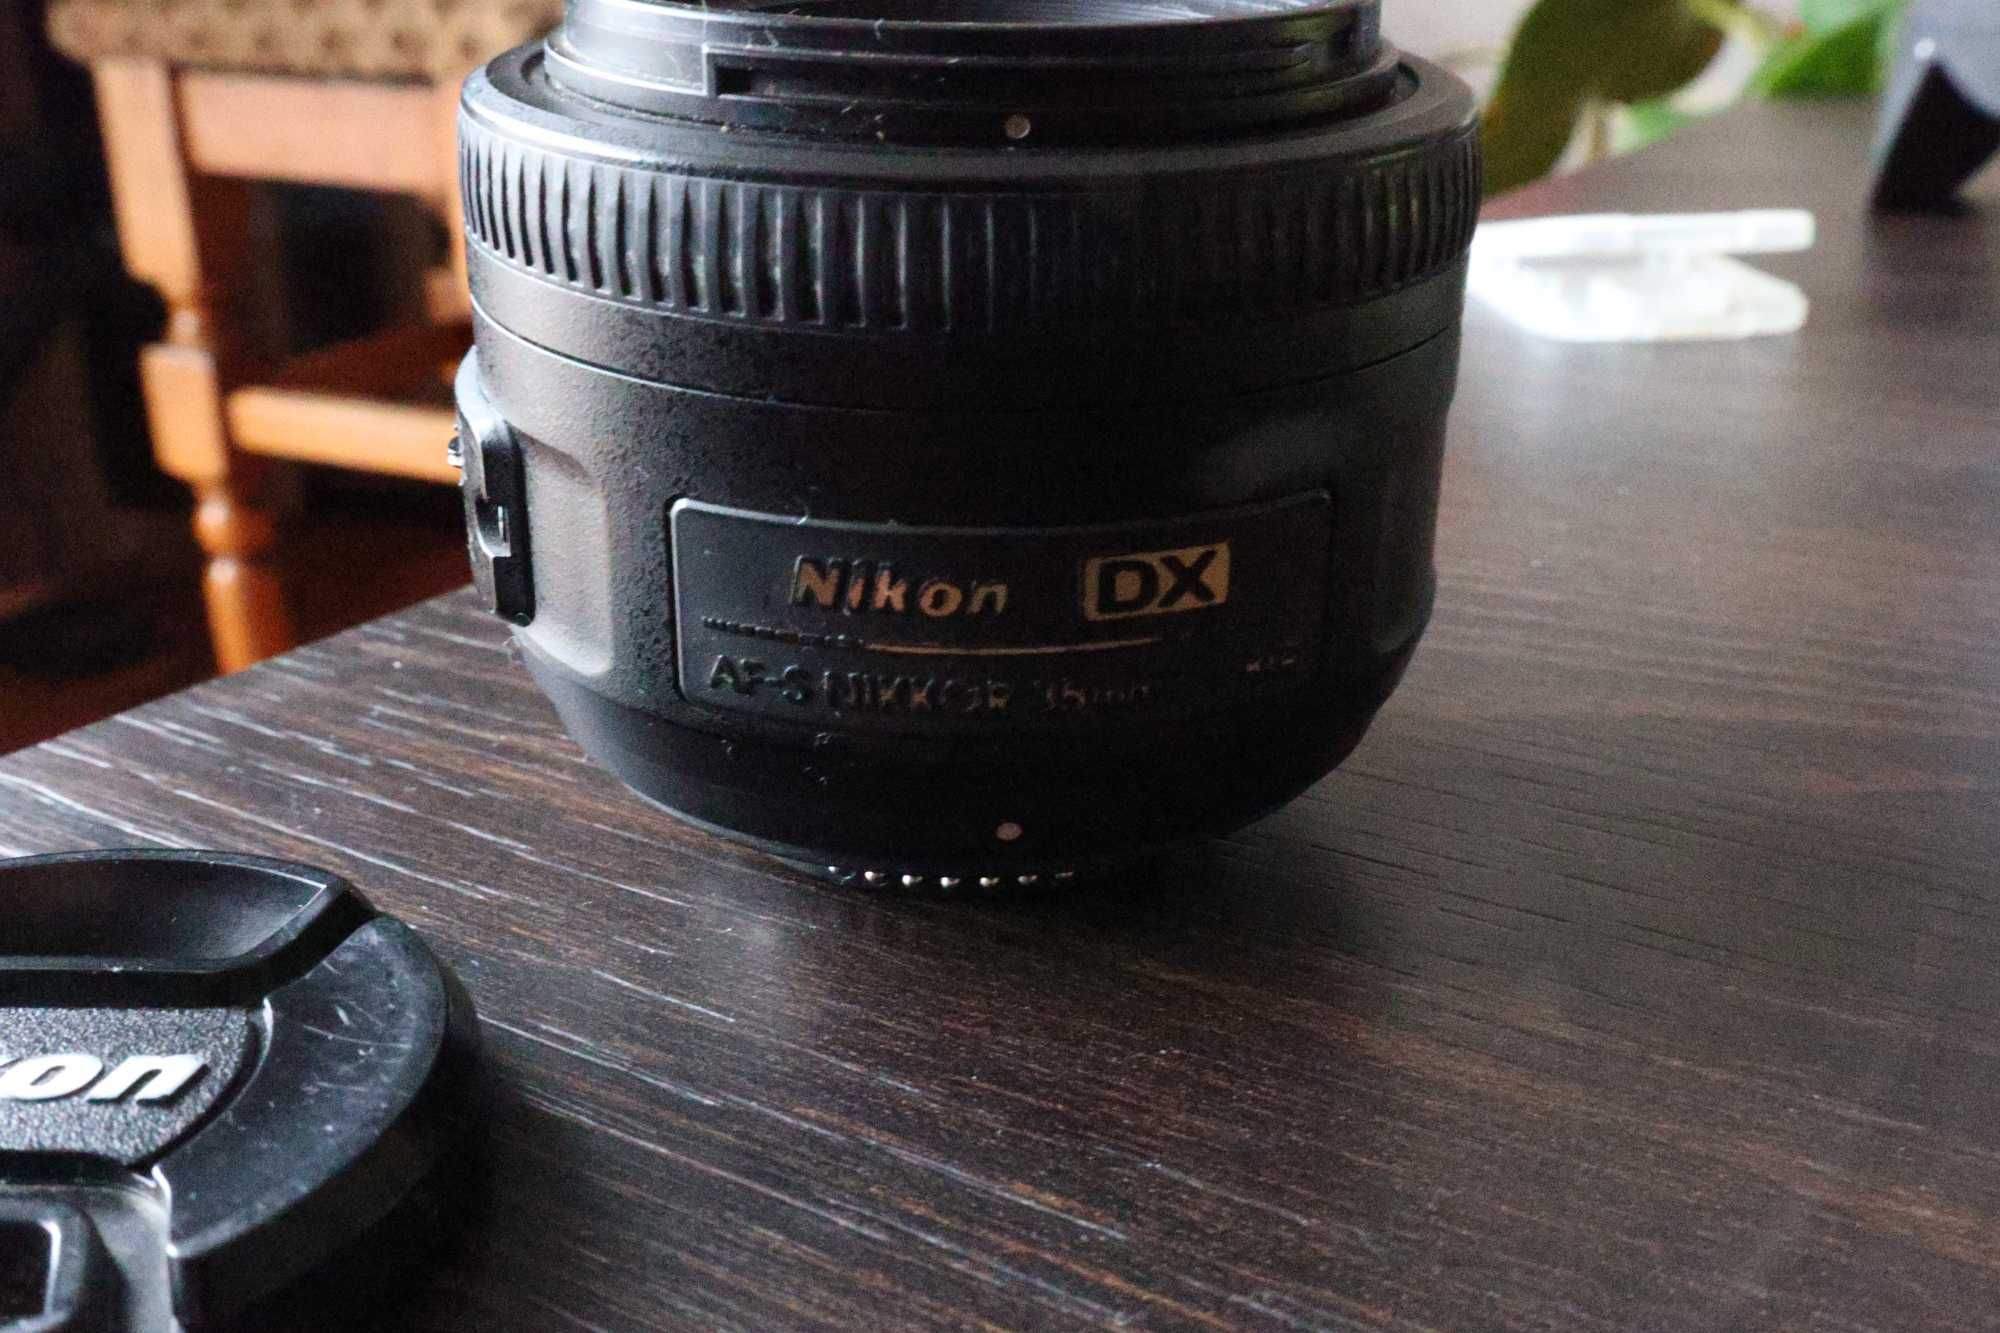 Nikon 35mm f/1.8 G DX AF-S Nikkor